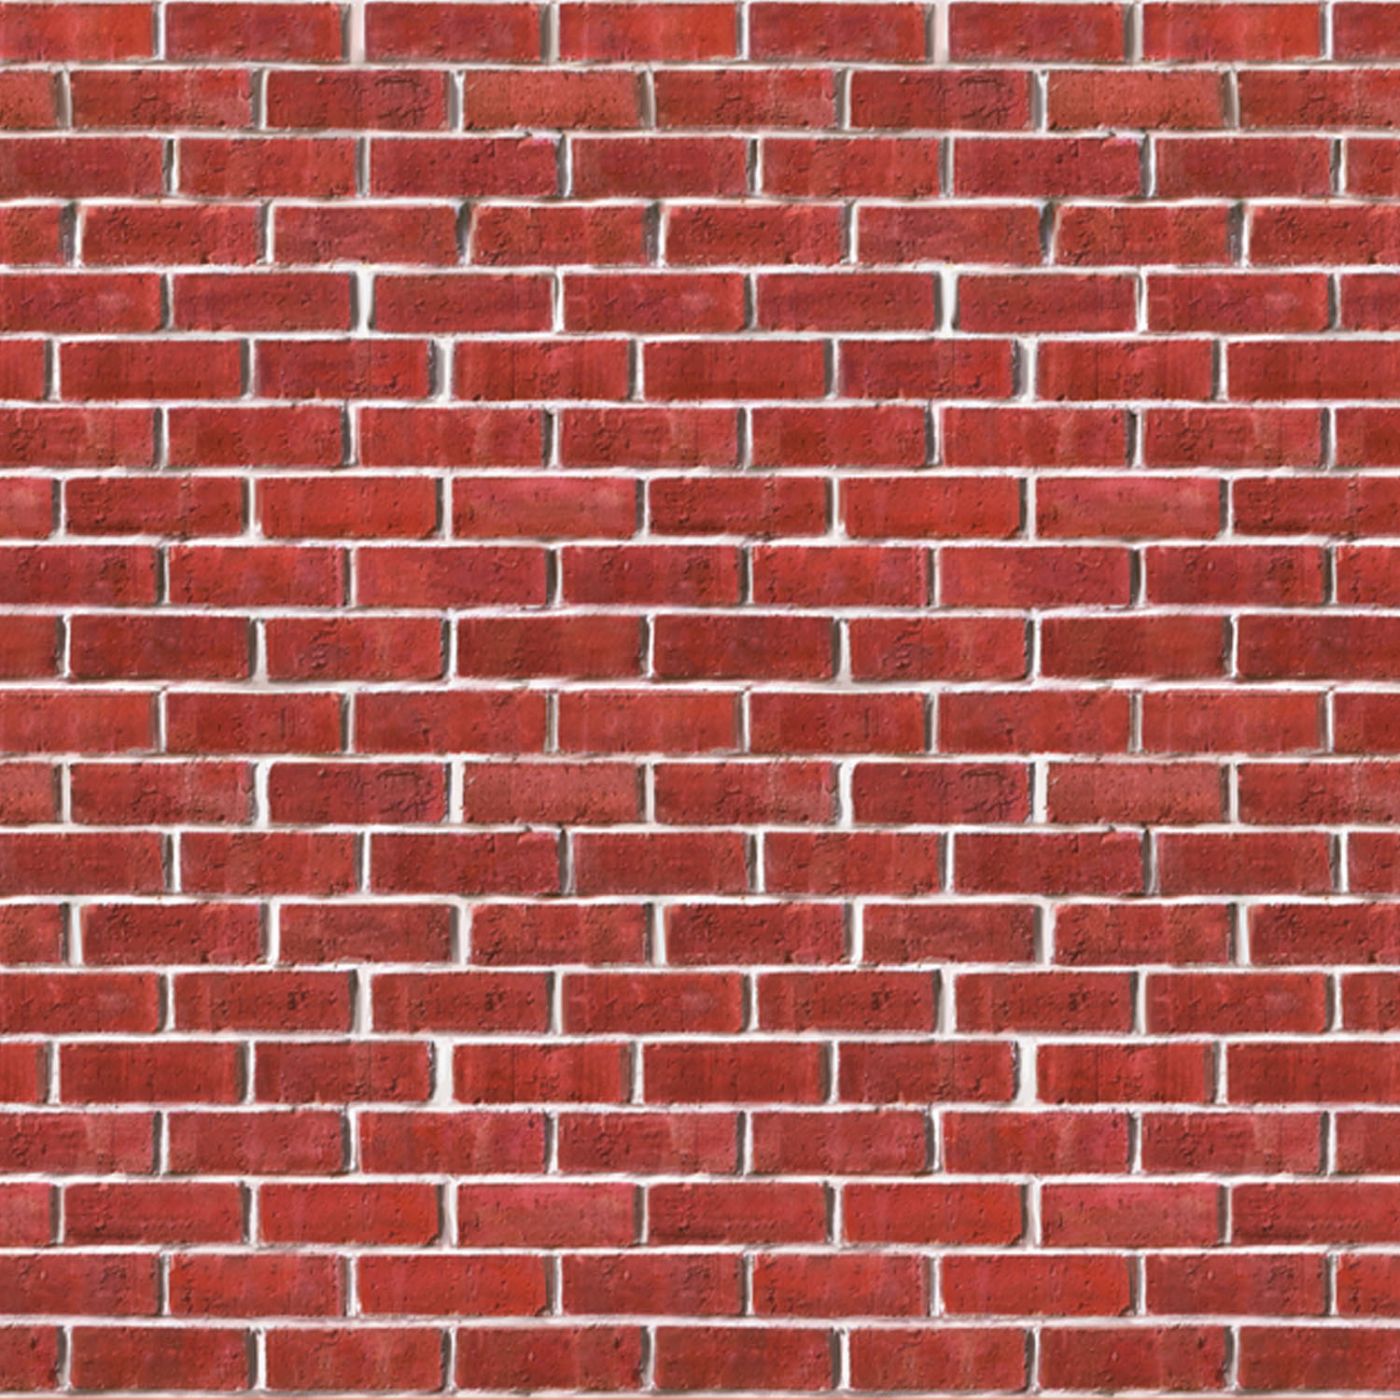 Image of Brick Wall Backdrop (6)